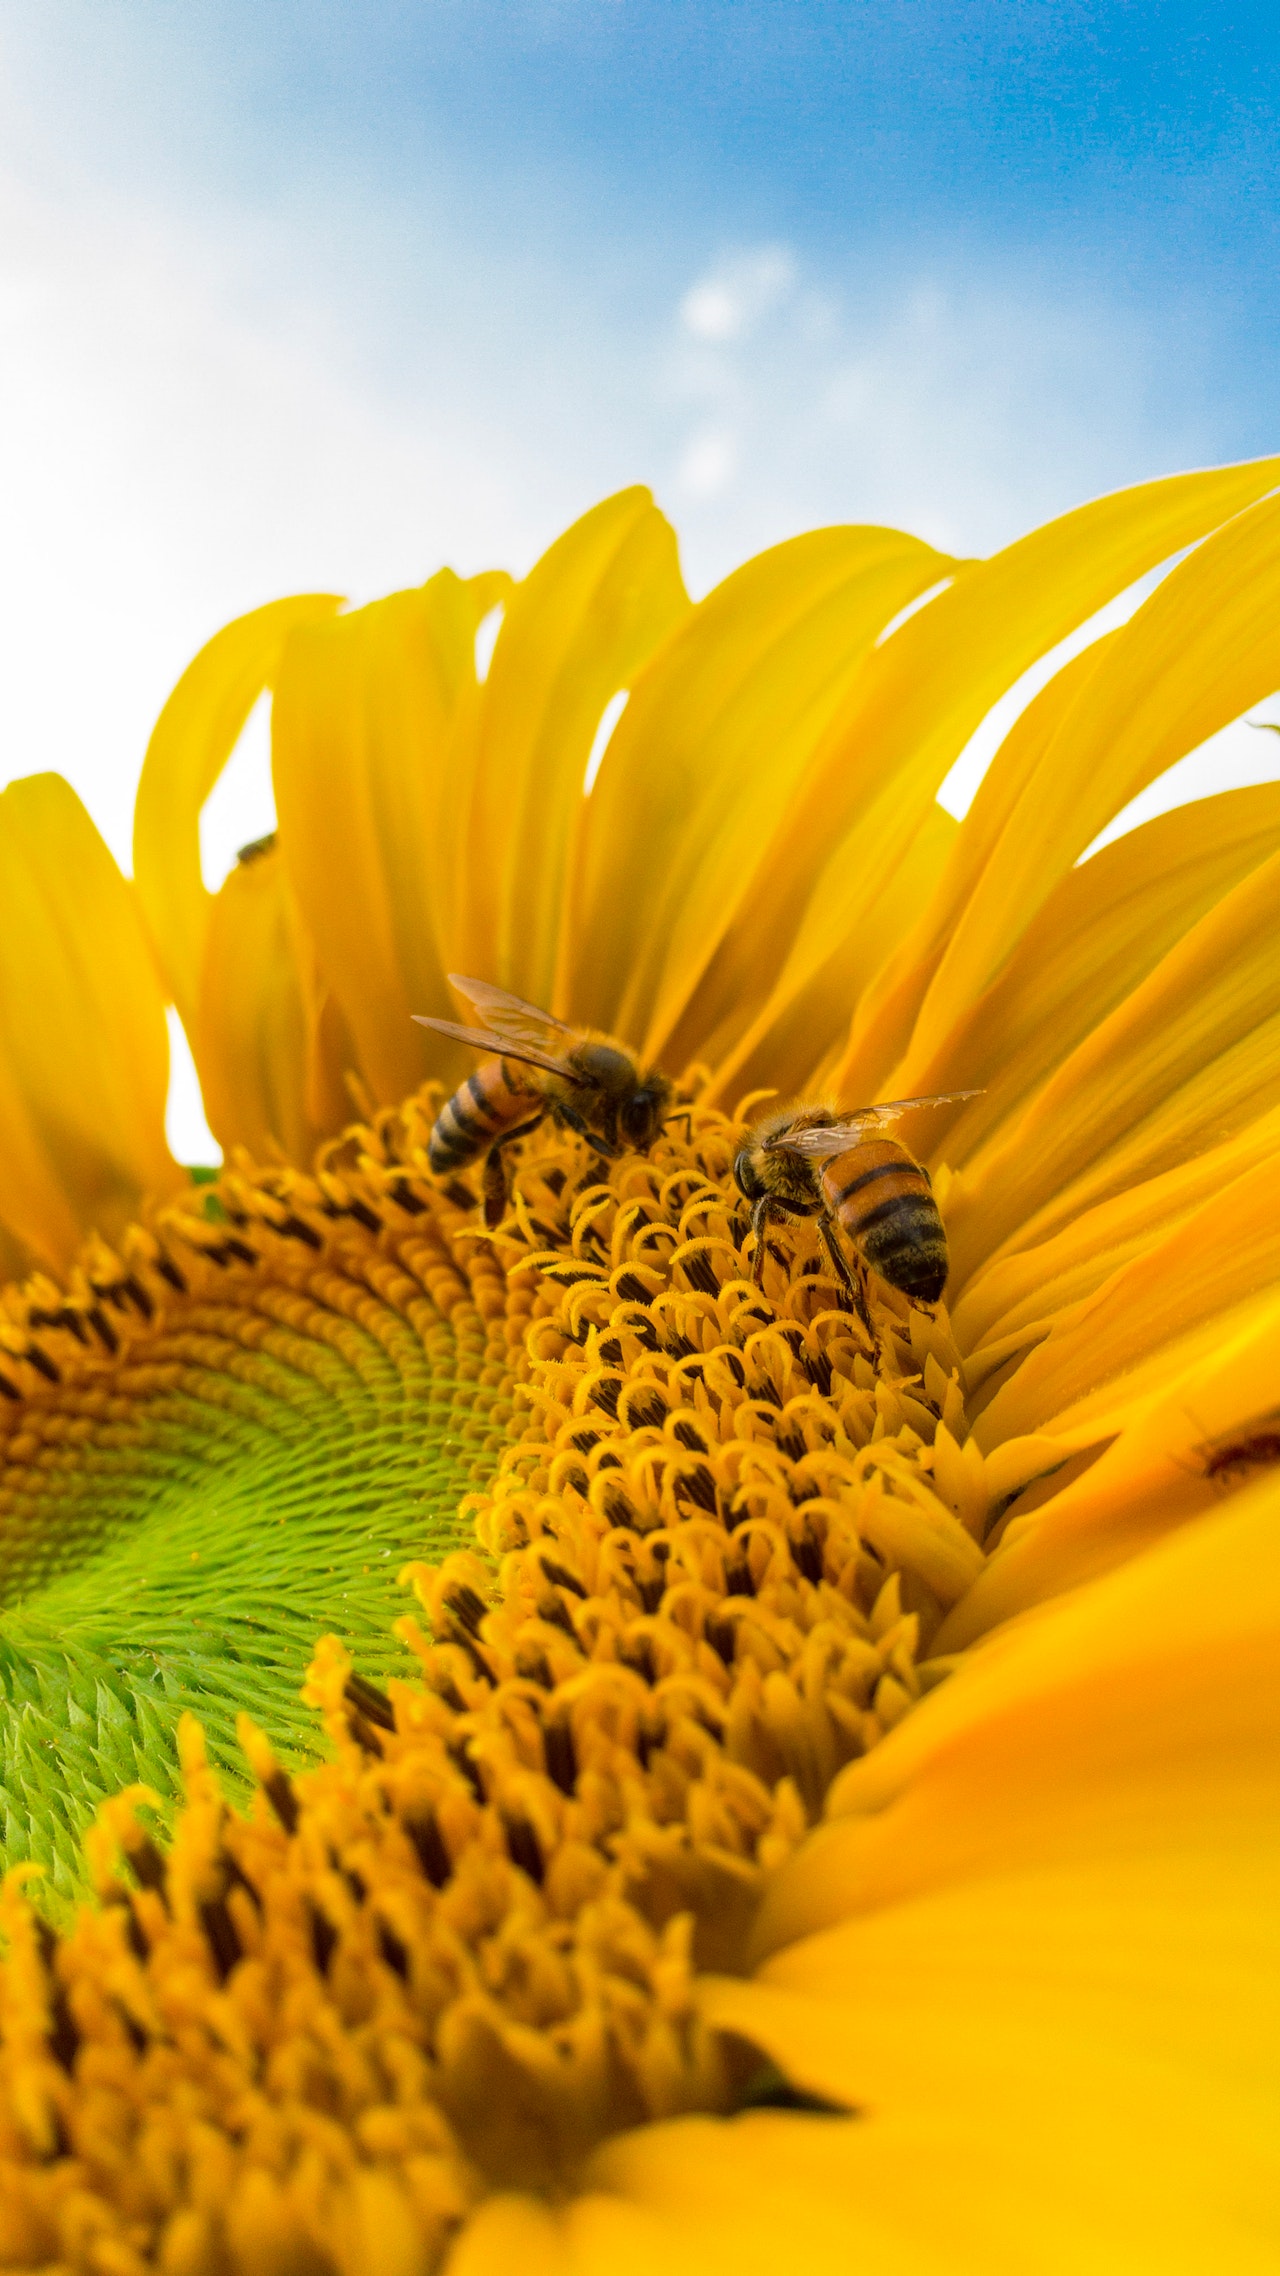 Los ambientalistas advierten de la crisis de la disminución en la población de los polinizadores naturales, las abejas. Foto: Caio/Pexels.